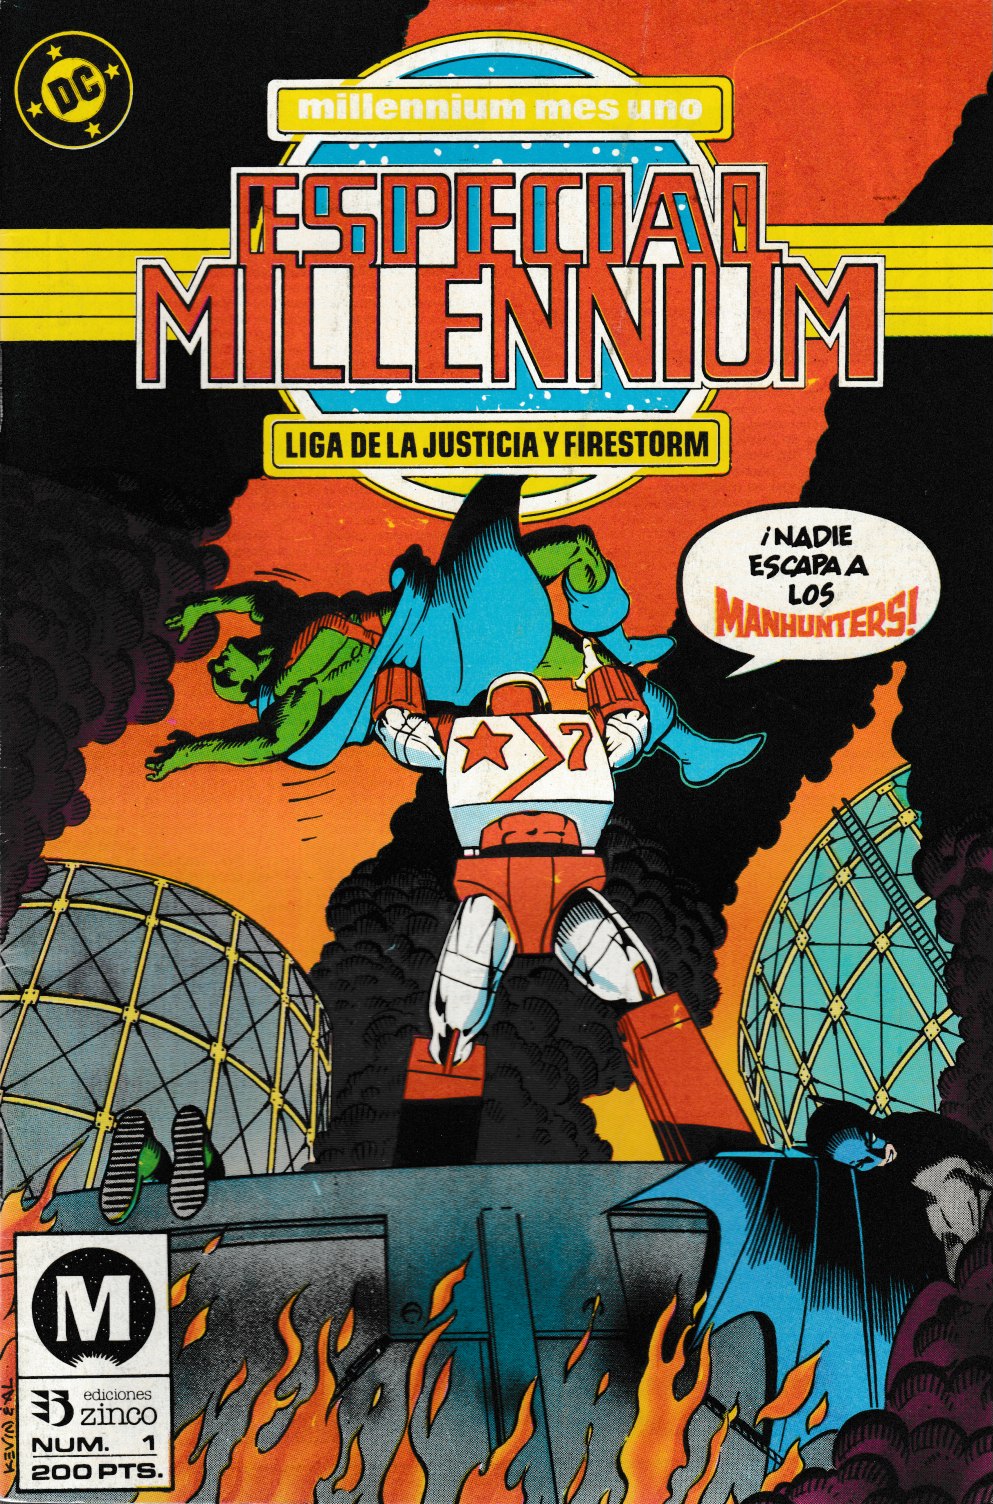 Especial Millennium. Zinco 1988. Nº 1 La Liga de la Justicia y Firestorm